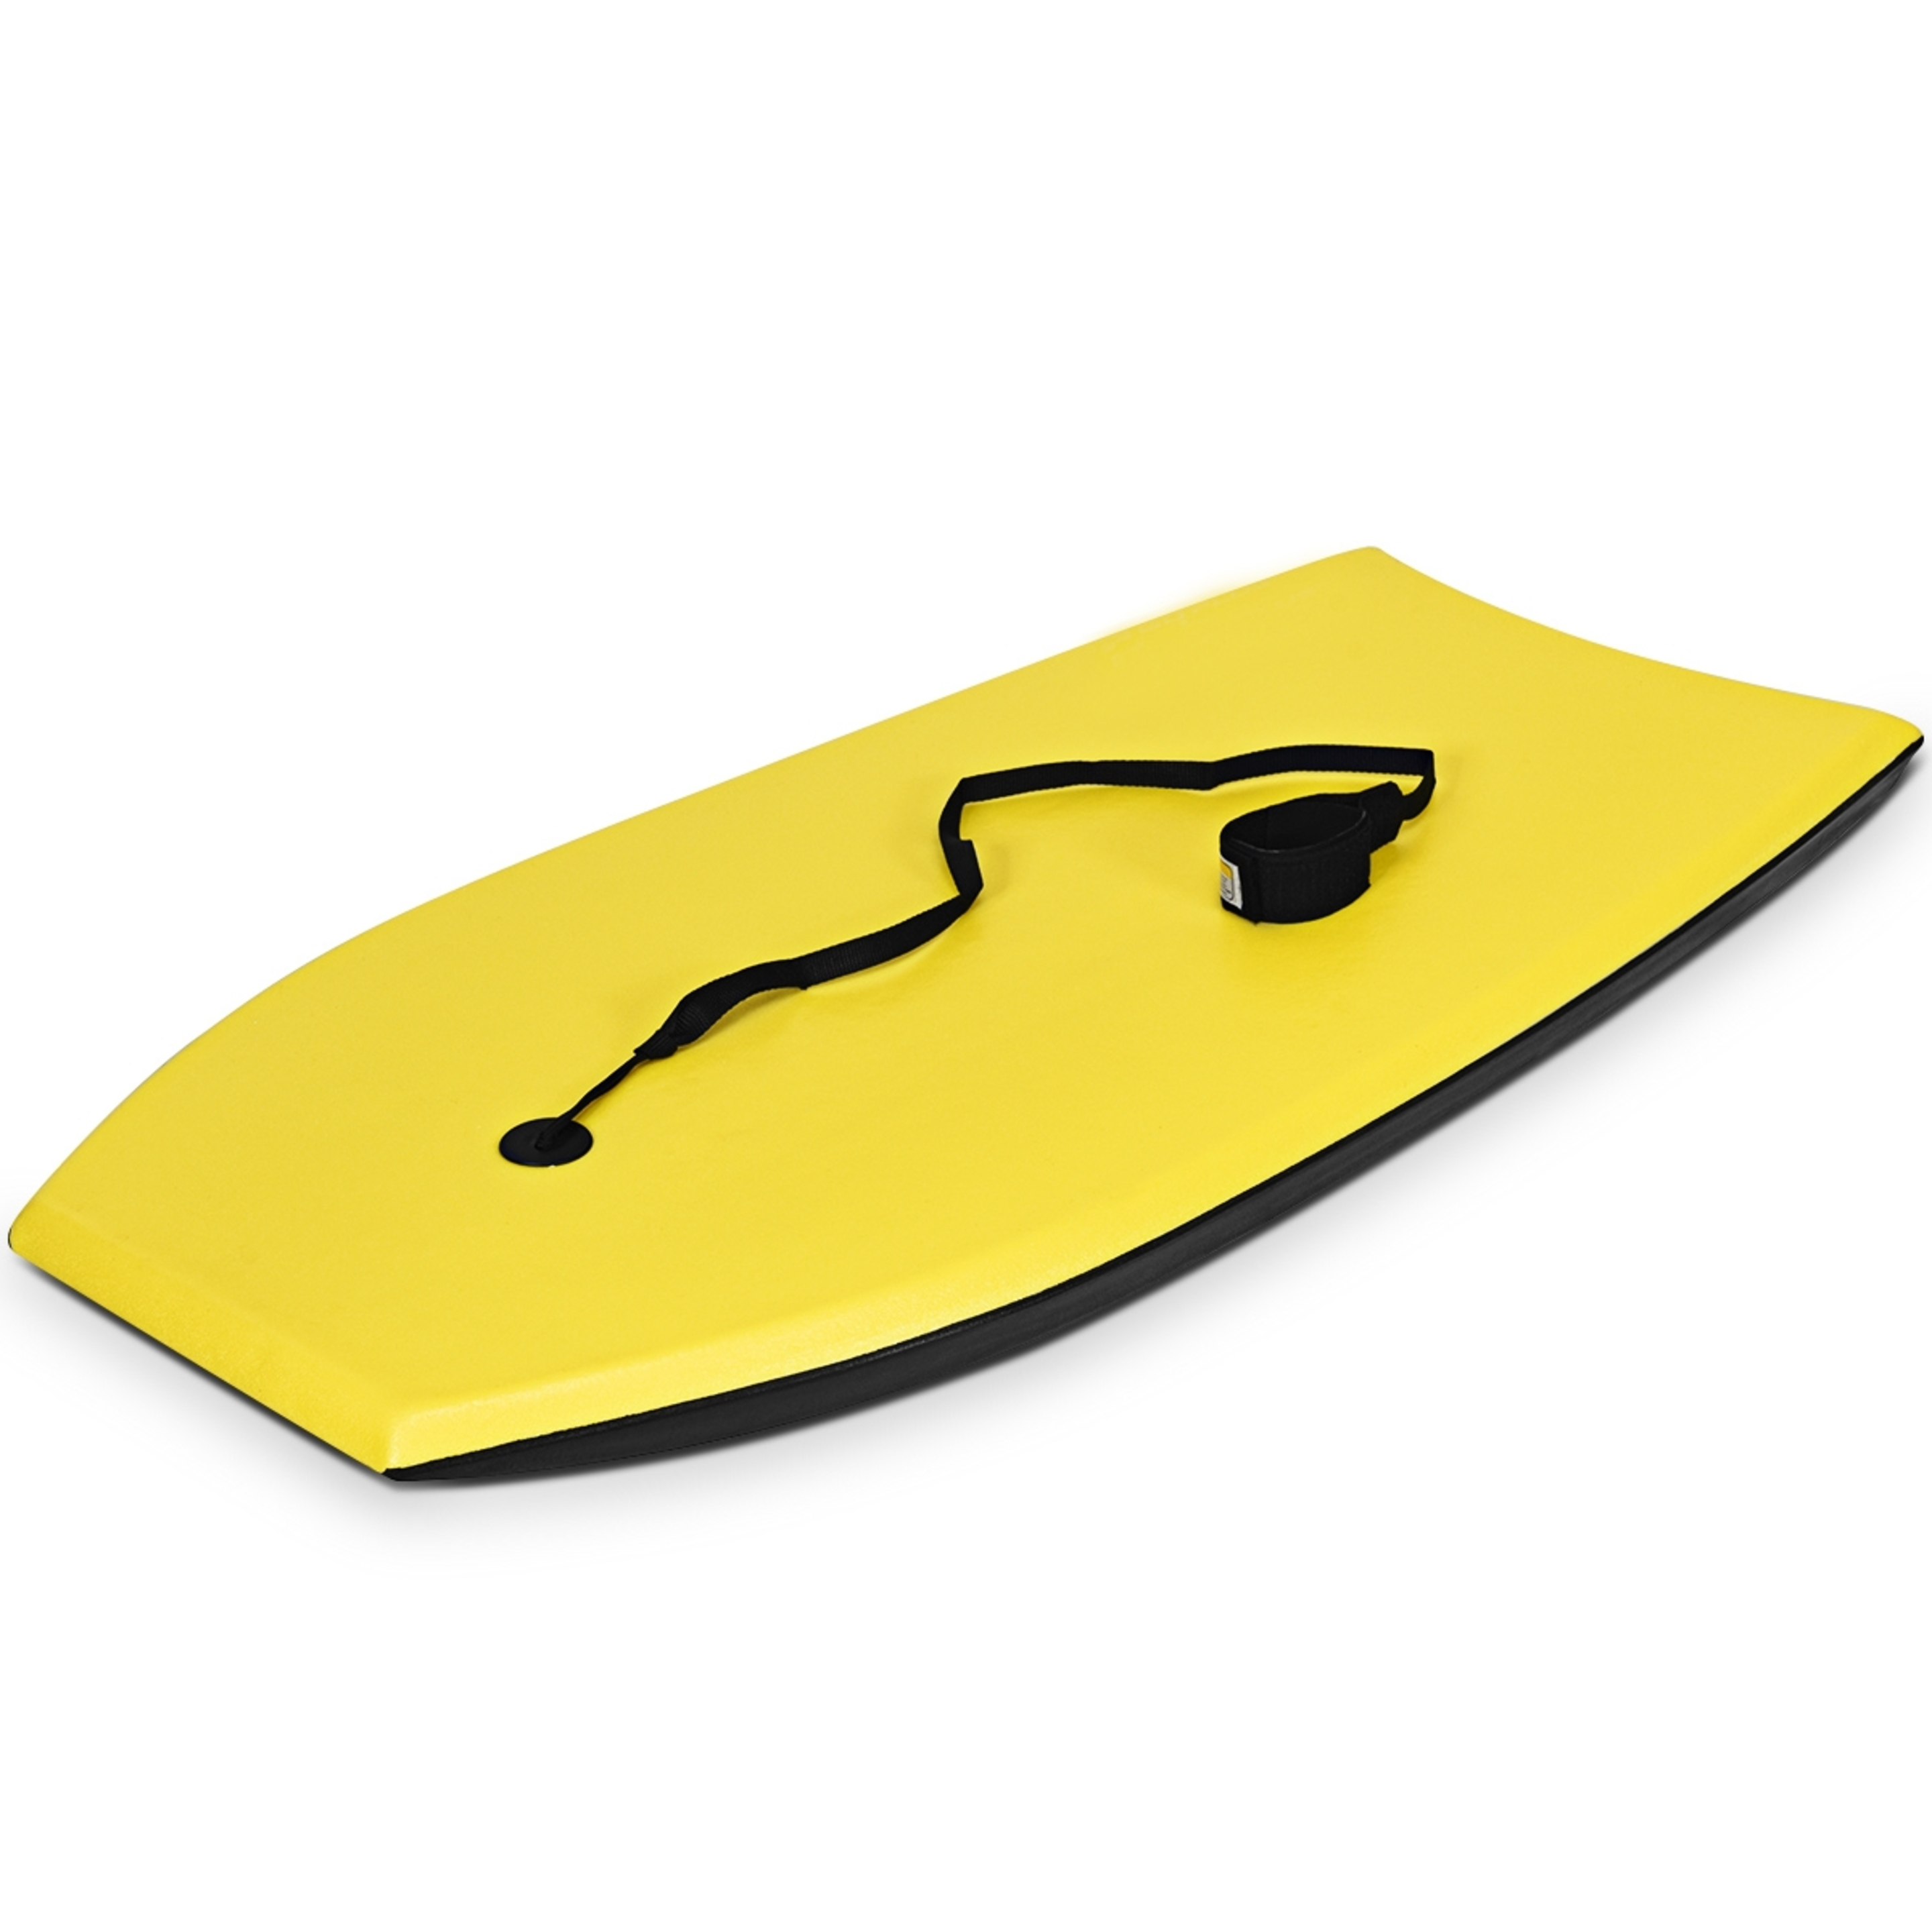 Costway Bodyboard Tabla De Surf Amarillo 104 X 51 Cm - Amarillo - Tabla de Surf  MKP